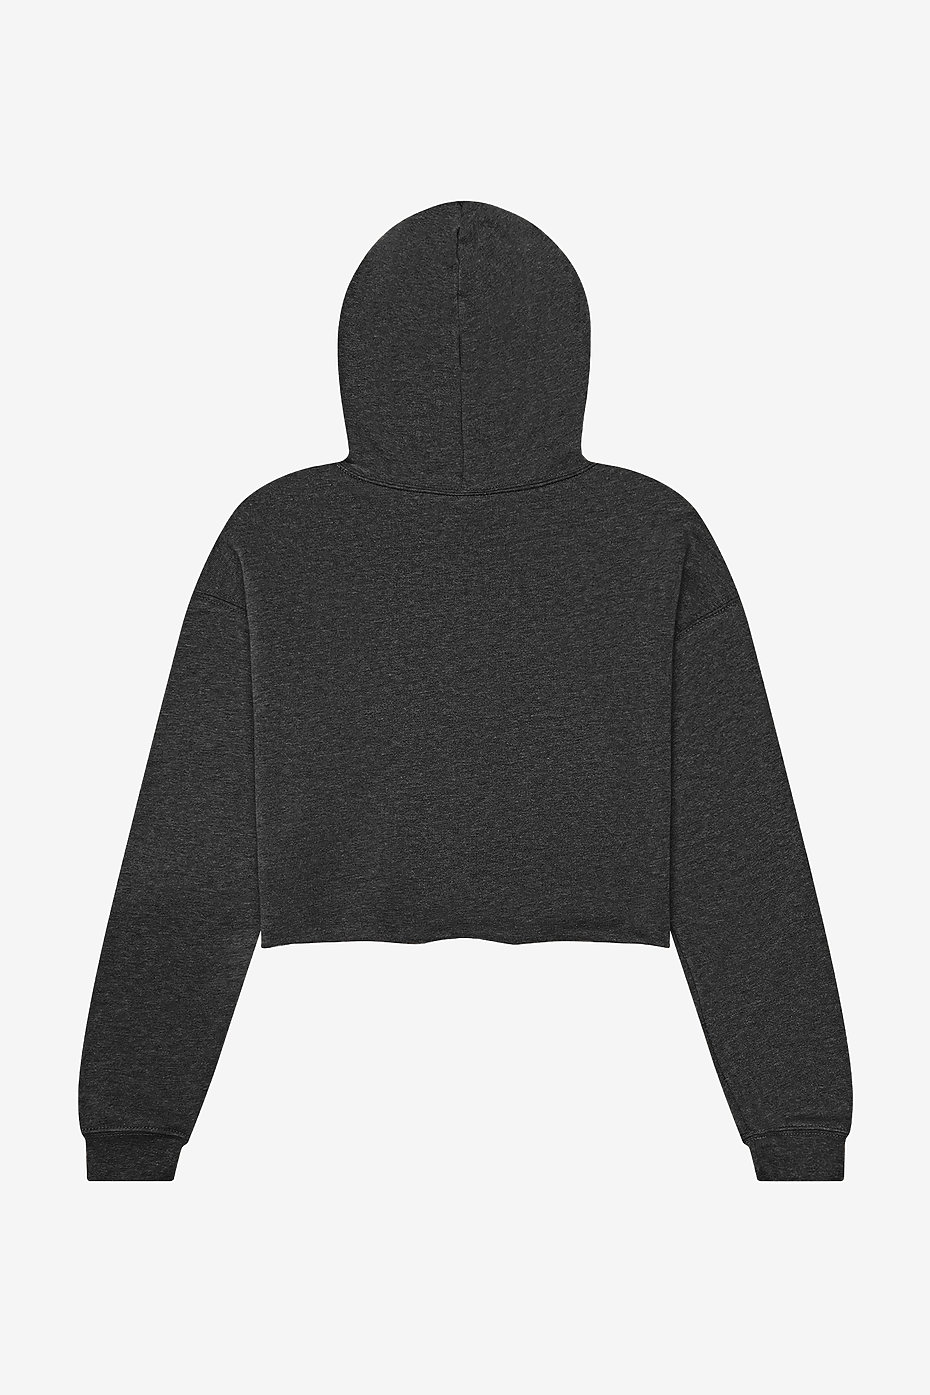 blank crop hoodie